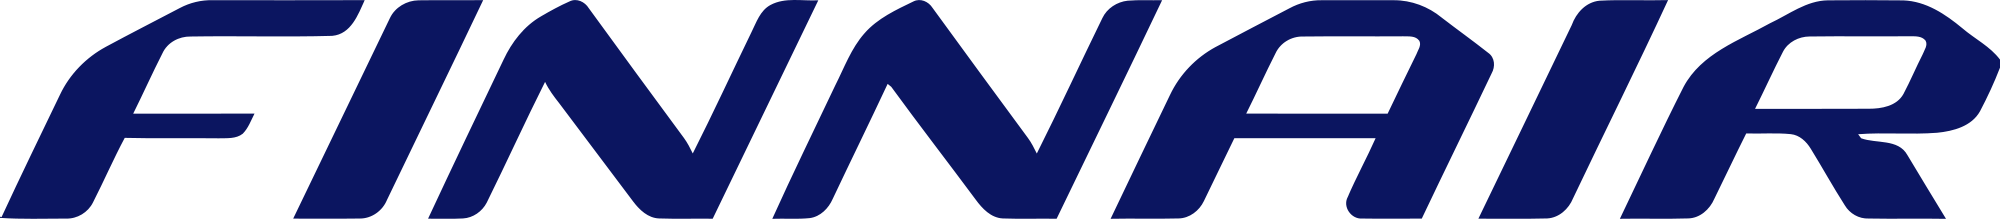 Логотип Finnair